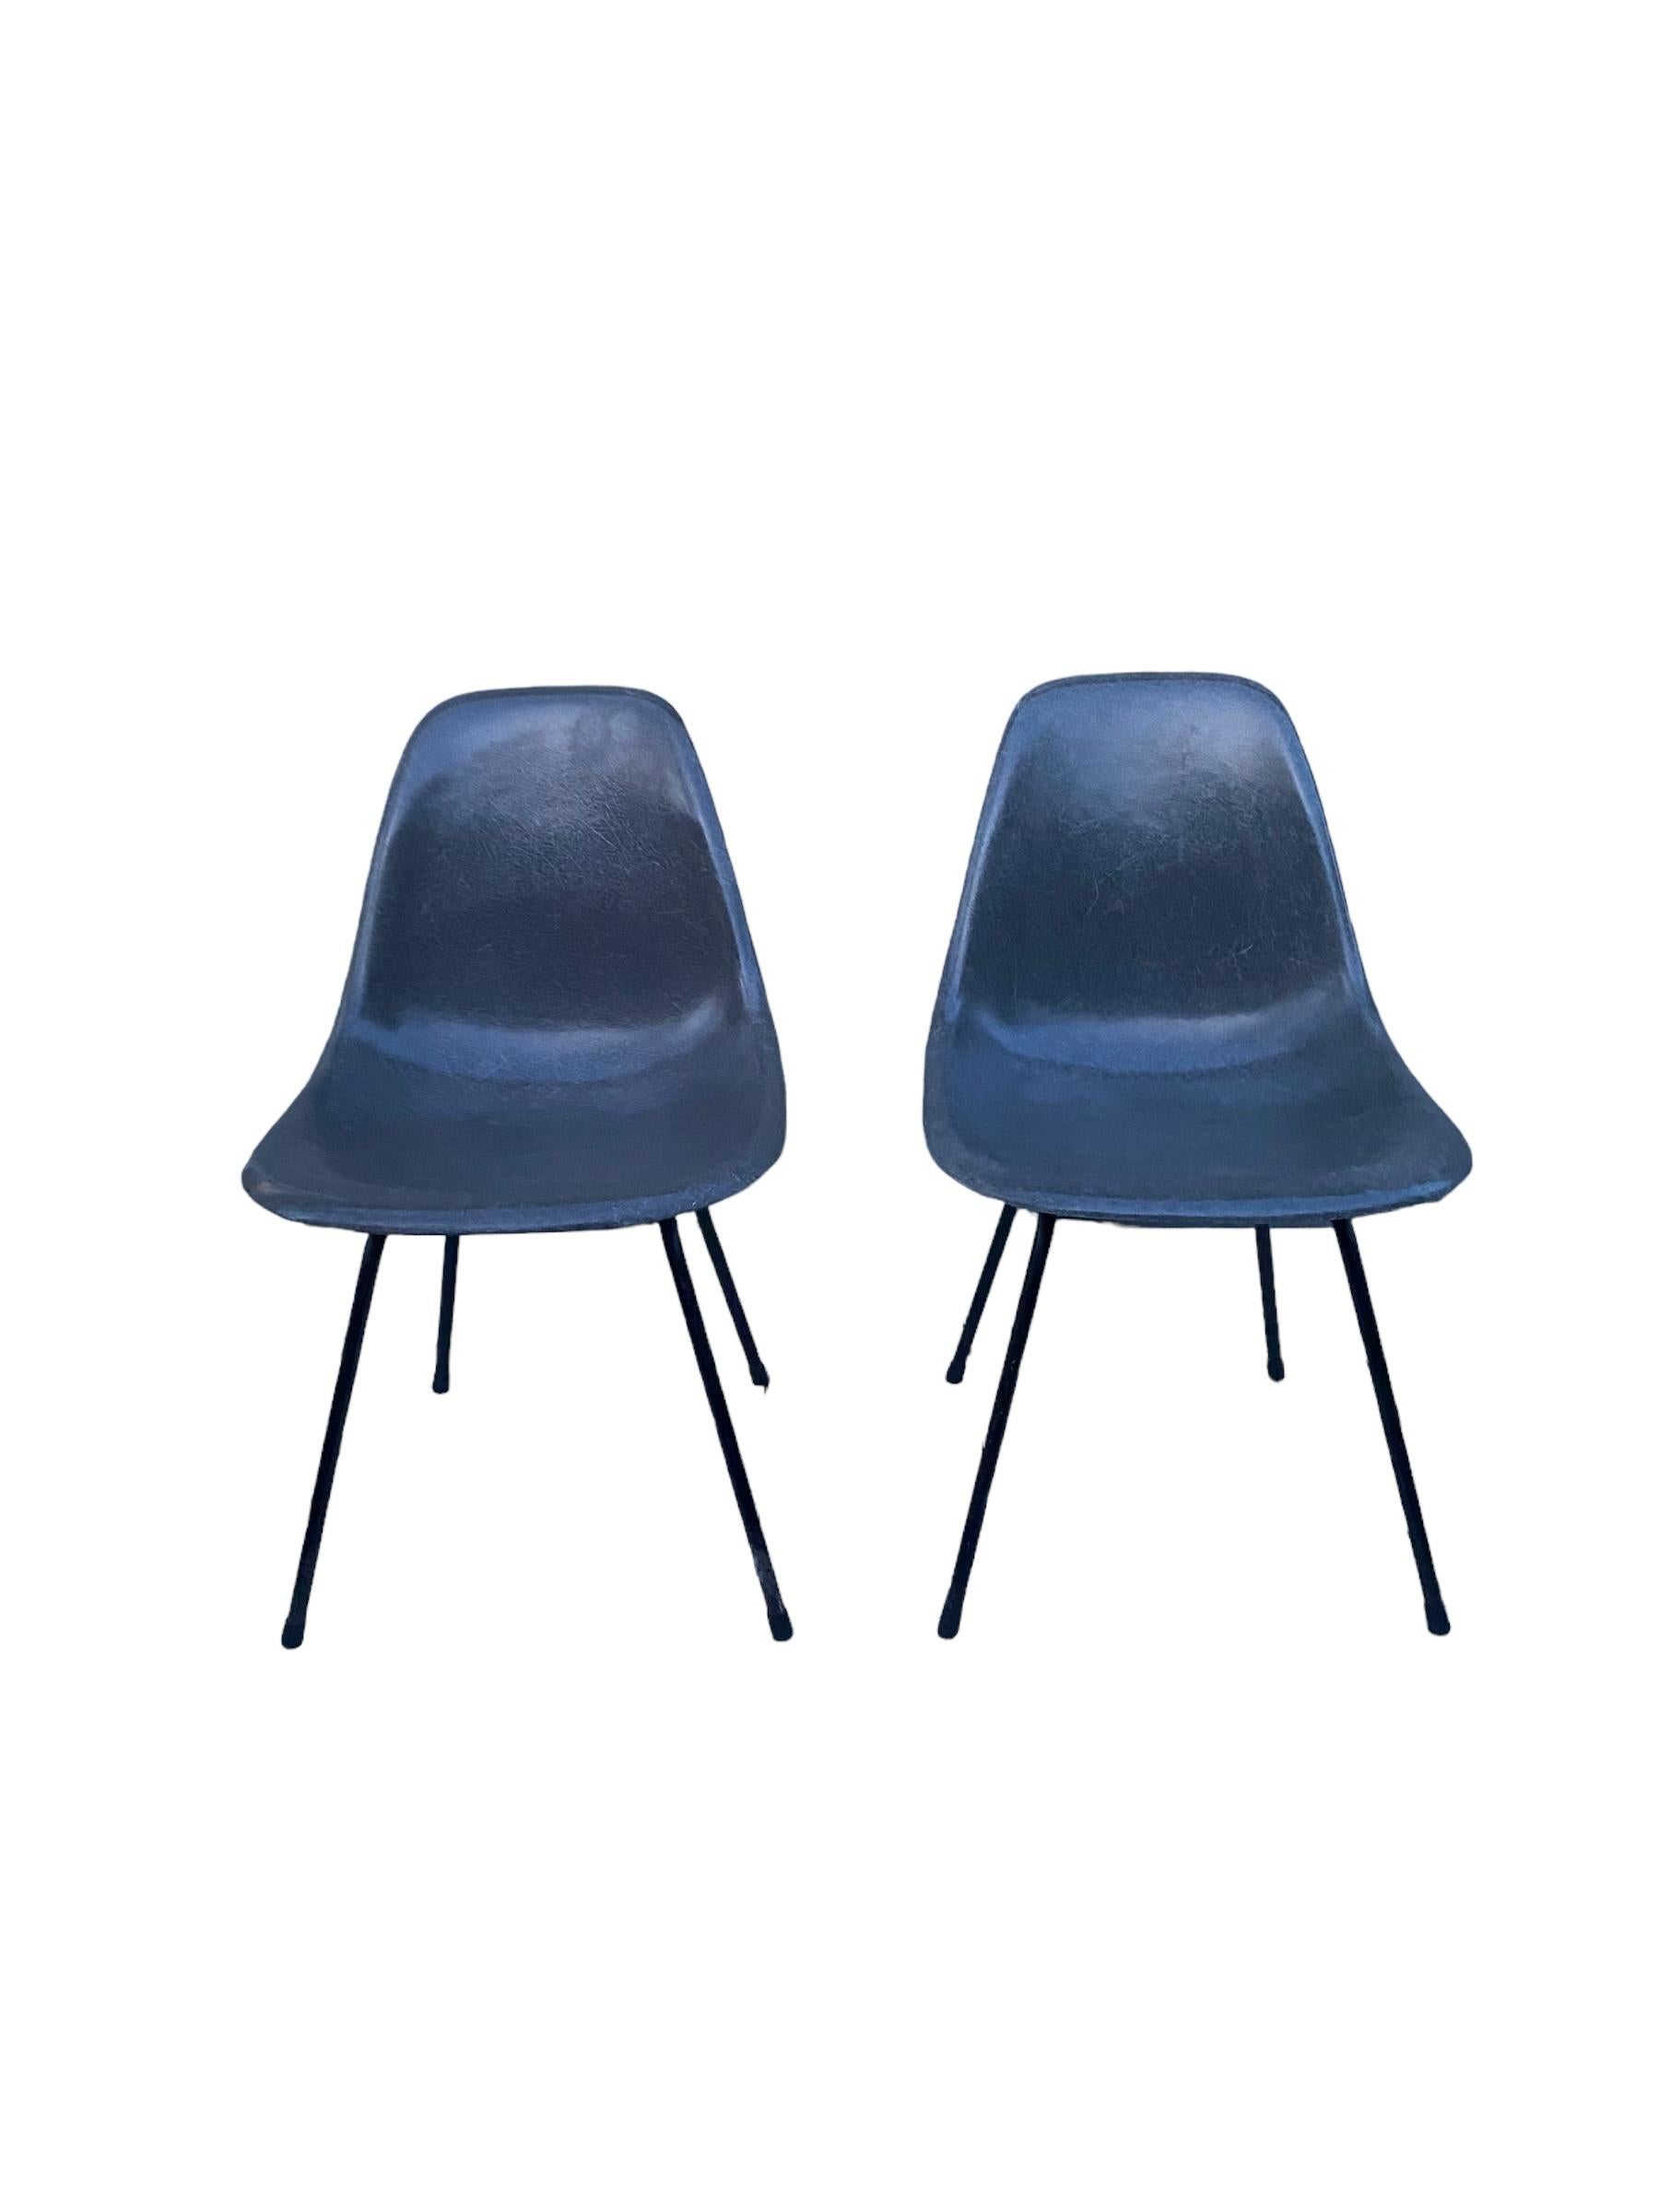 Ein Paar Elephant Gray Eames Esszimmerstühle von Herman Miller. Diese Beistellstühle haben eine ausgezeichnete Glasfaserstruktur und eine gleichmäßige Farbe. Geprägtes Herman Miller-Logo und Patentetikett teilweise sichtbar. Keine Risse oder